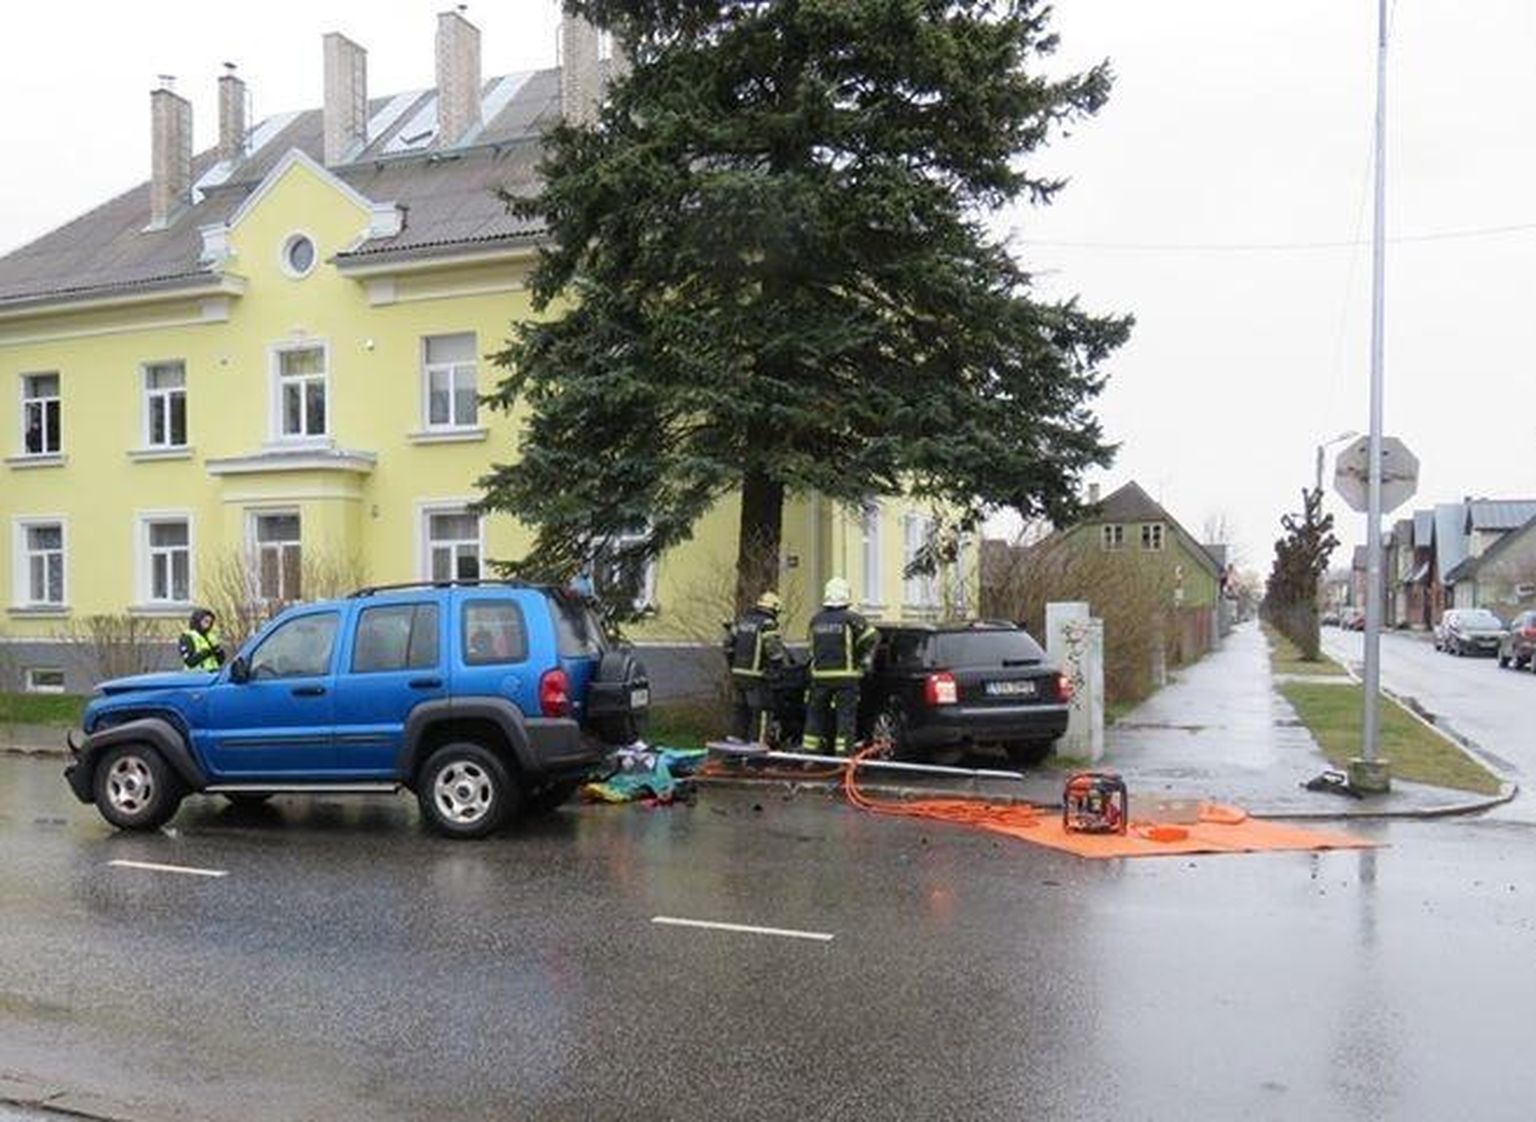 Liiklusõnnetused on Pärnus Aia–Karusselli ristmikul sagedased.